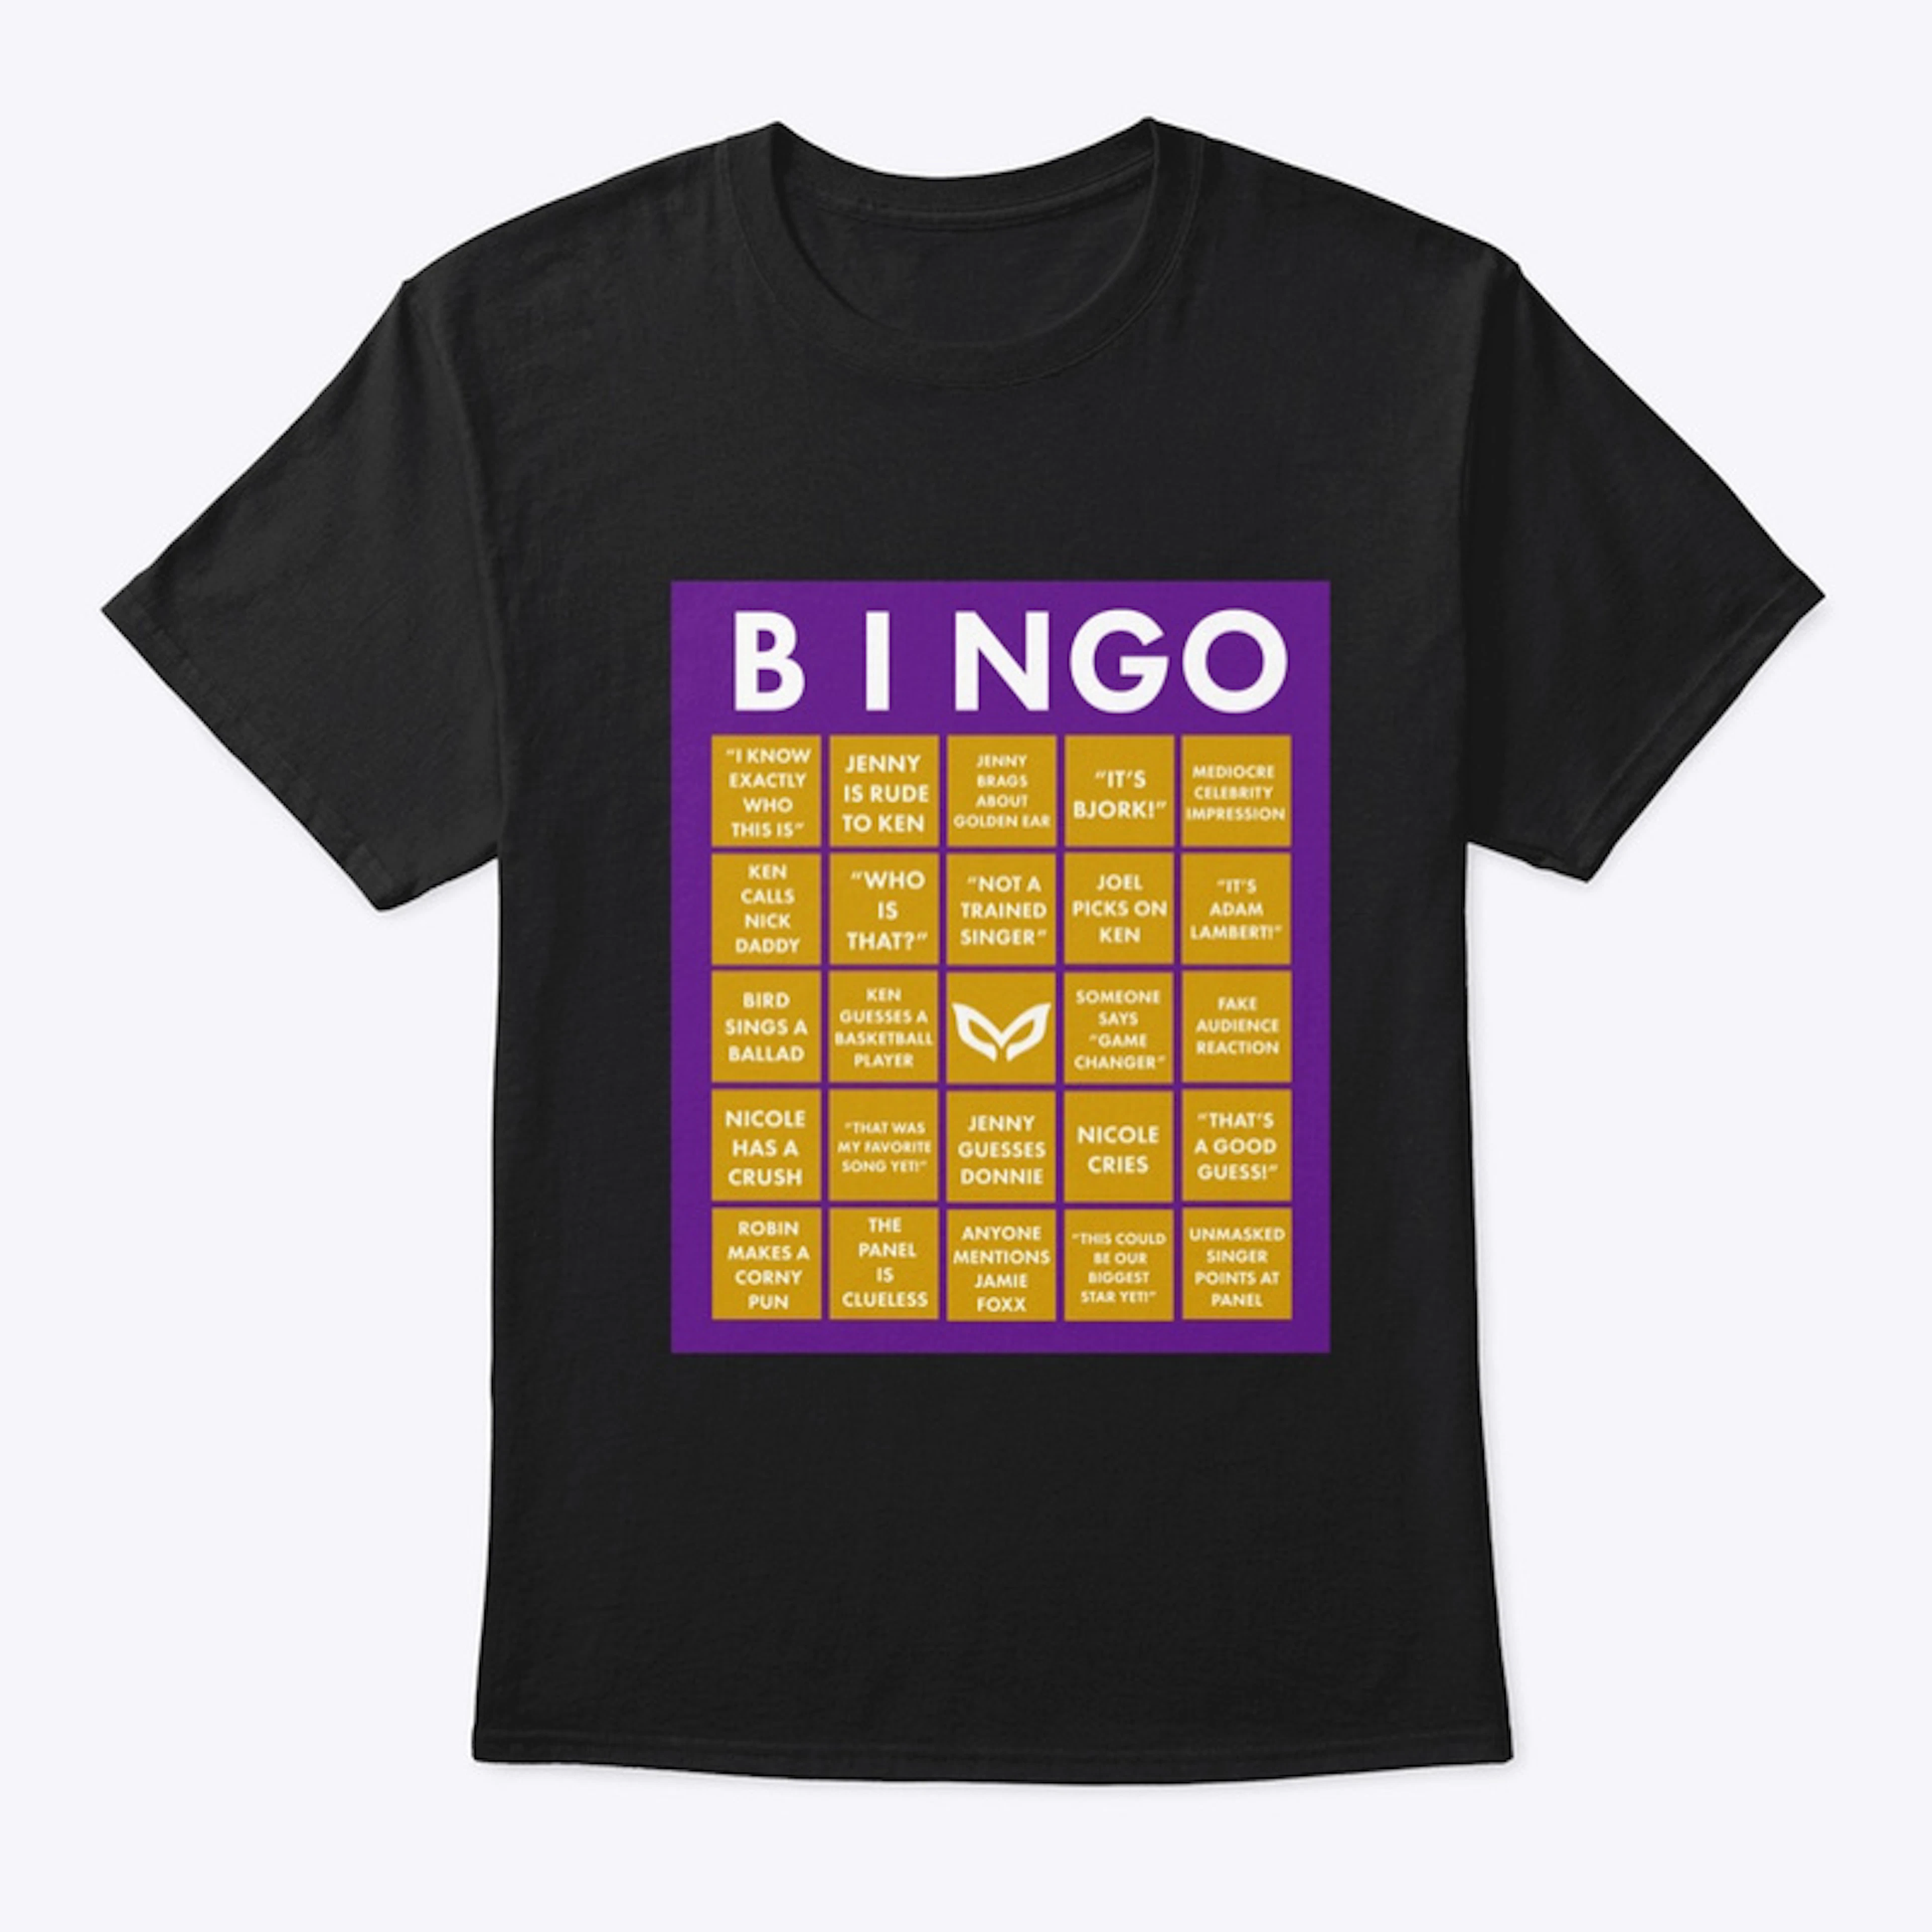 BINGO CARDS